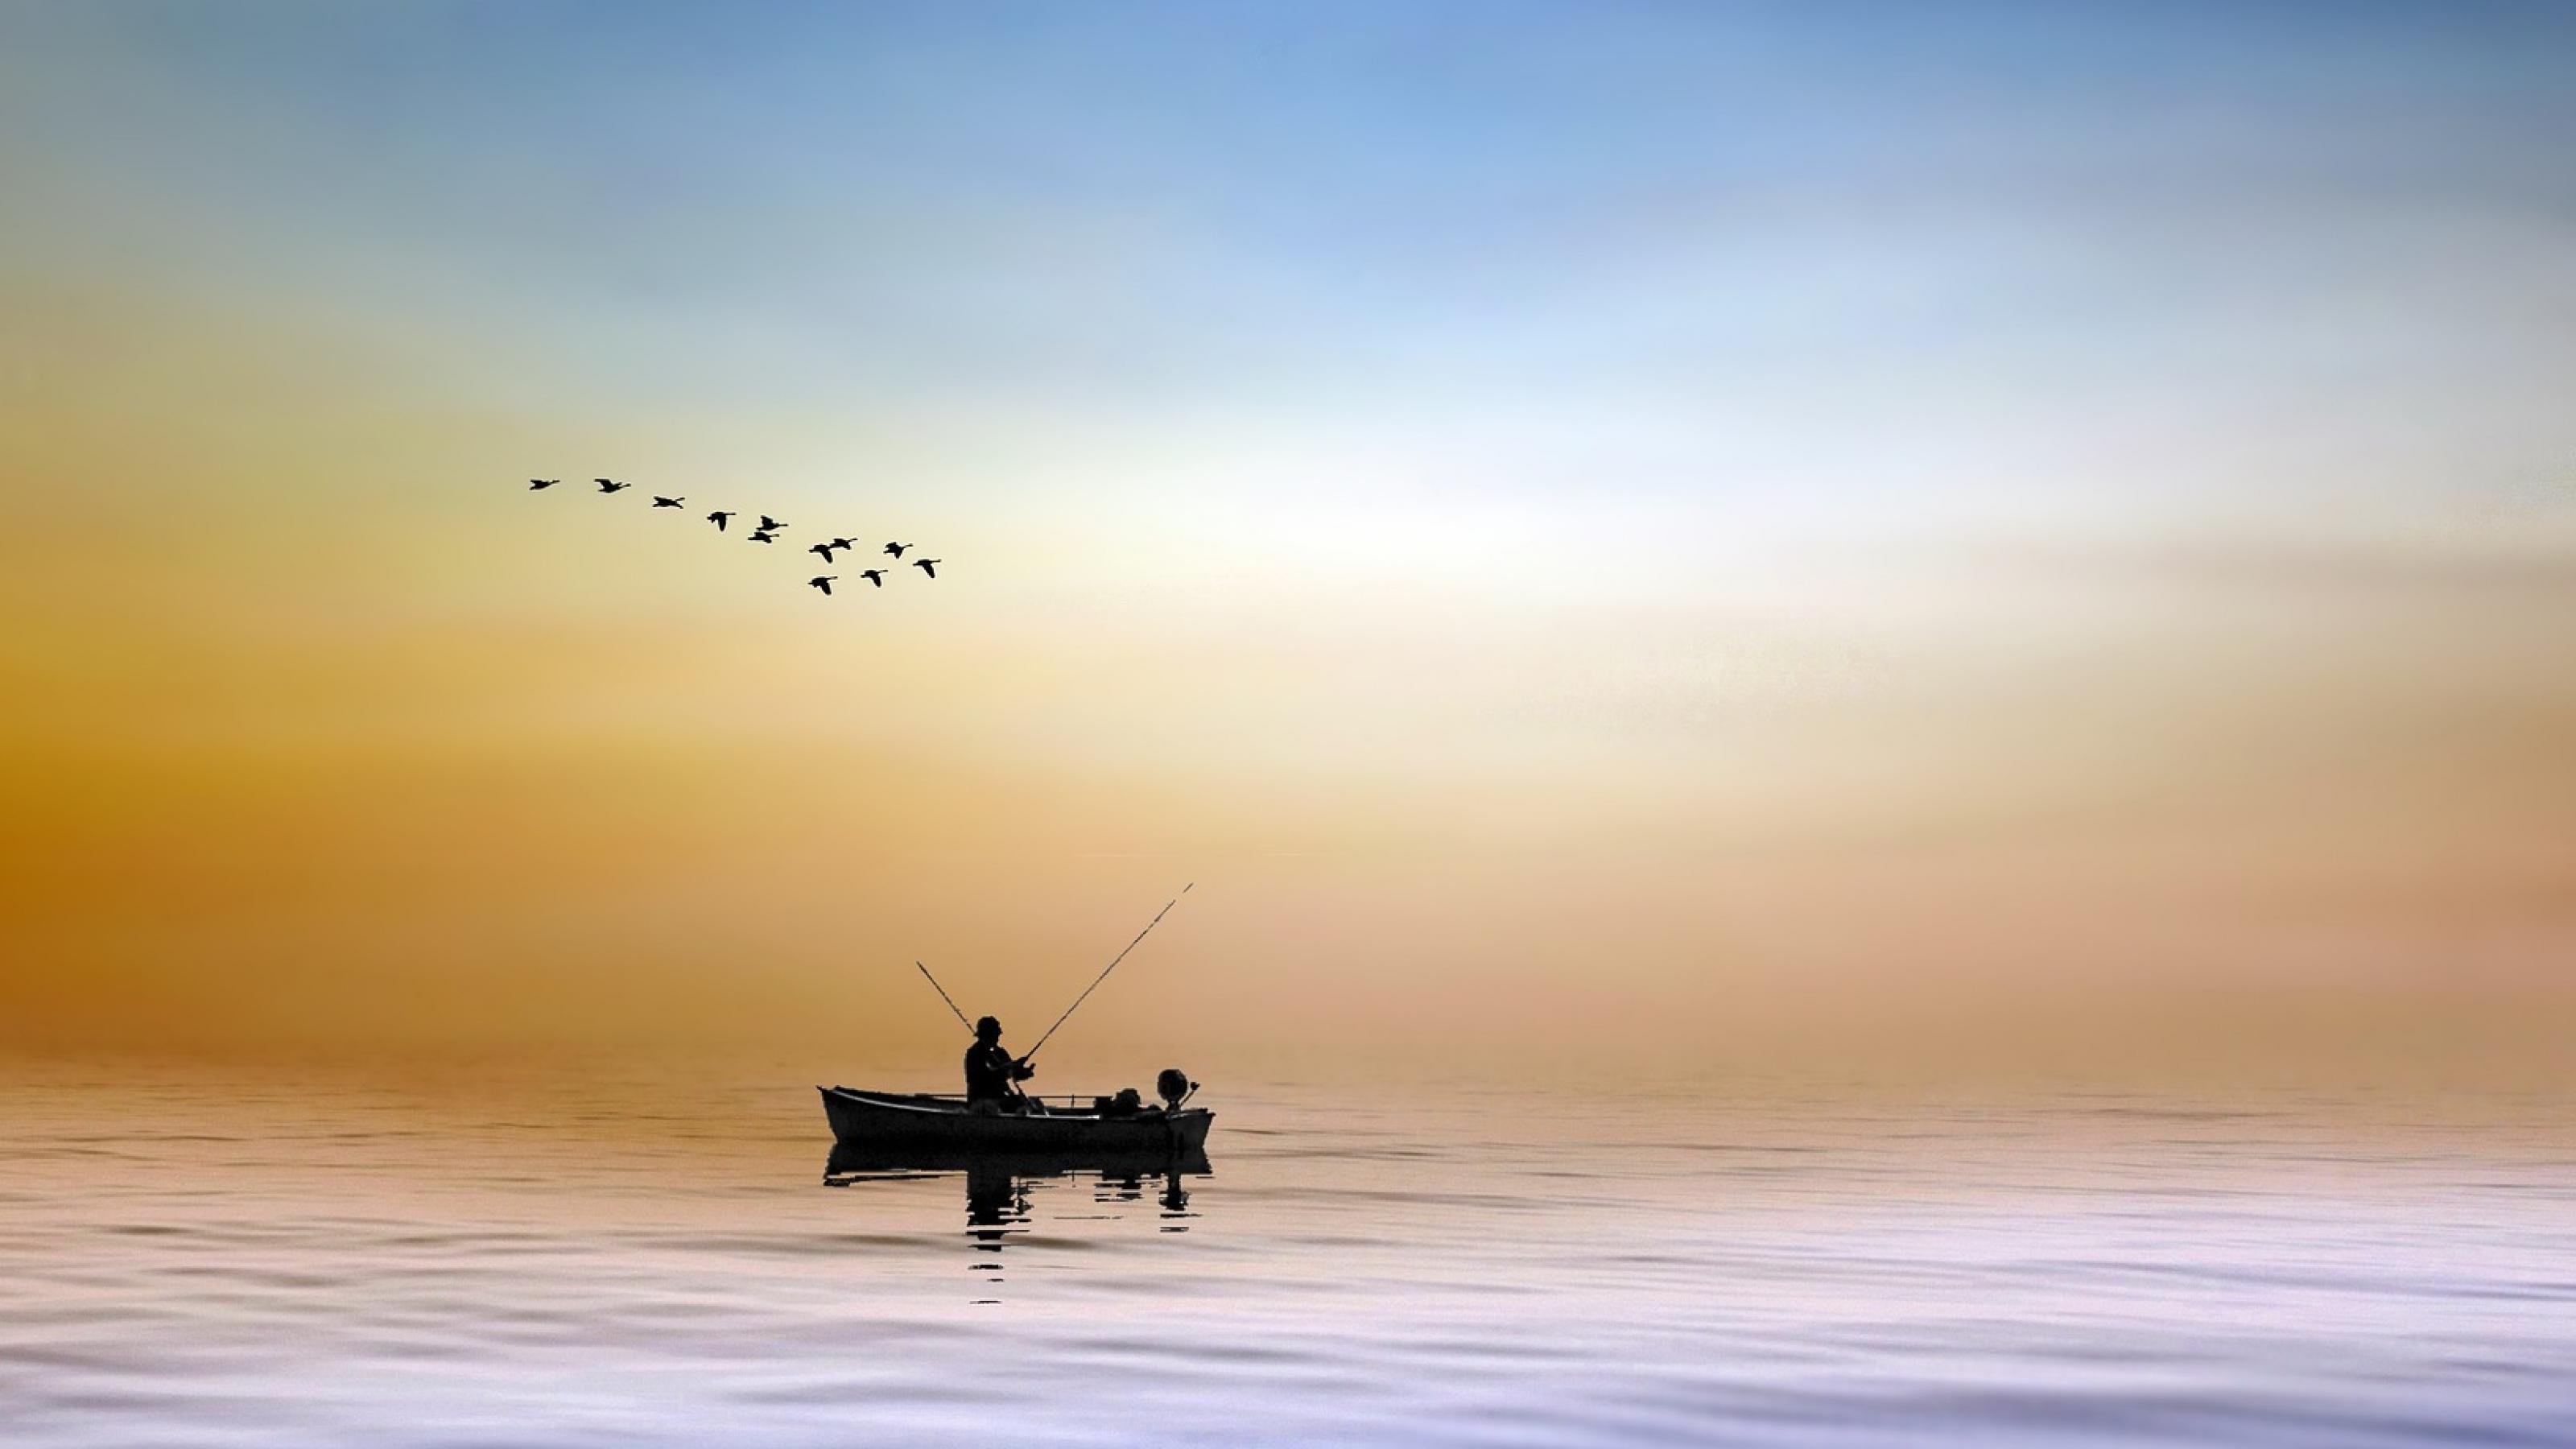 Ein einsames kleines Ruderboot auf ruhiger See, darüber fliegende Seevögel.